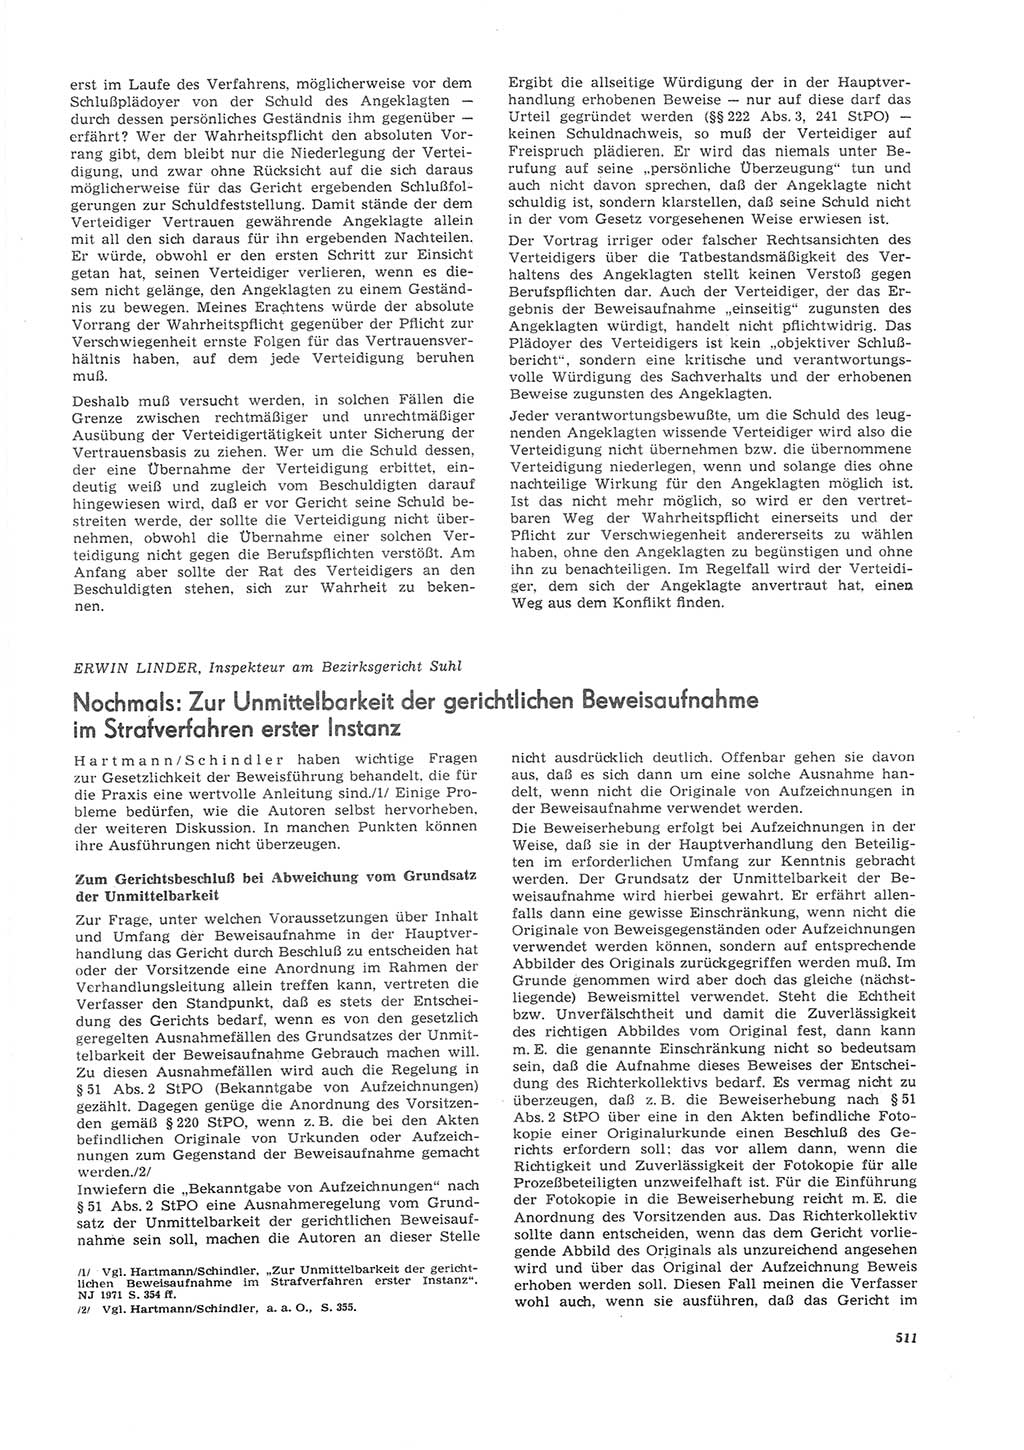 Neue Justiz (NJ), Zeitschrift für Recht und Rechtswissenschaft [Deutsche Demokratische Republik (DDR)], 26. Jahrgang 1972, Seite 511 (NJ DDR 1972, S. 511)